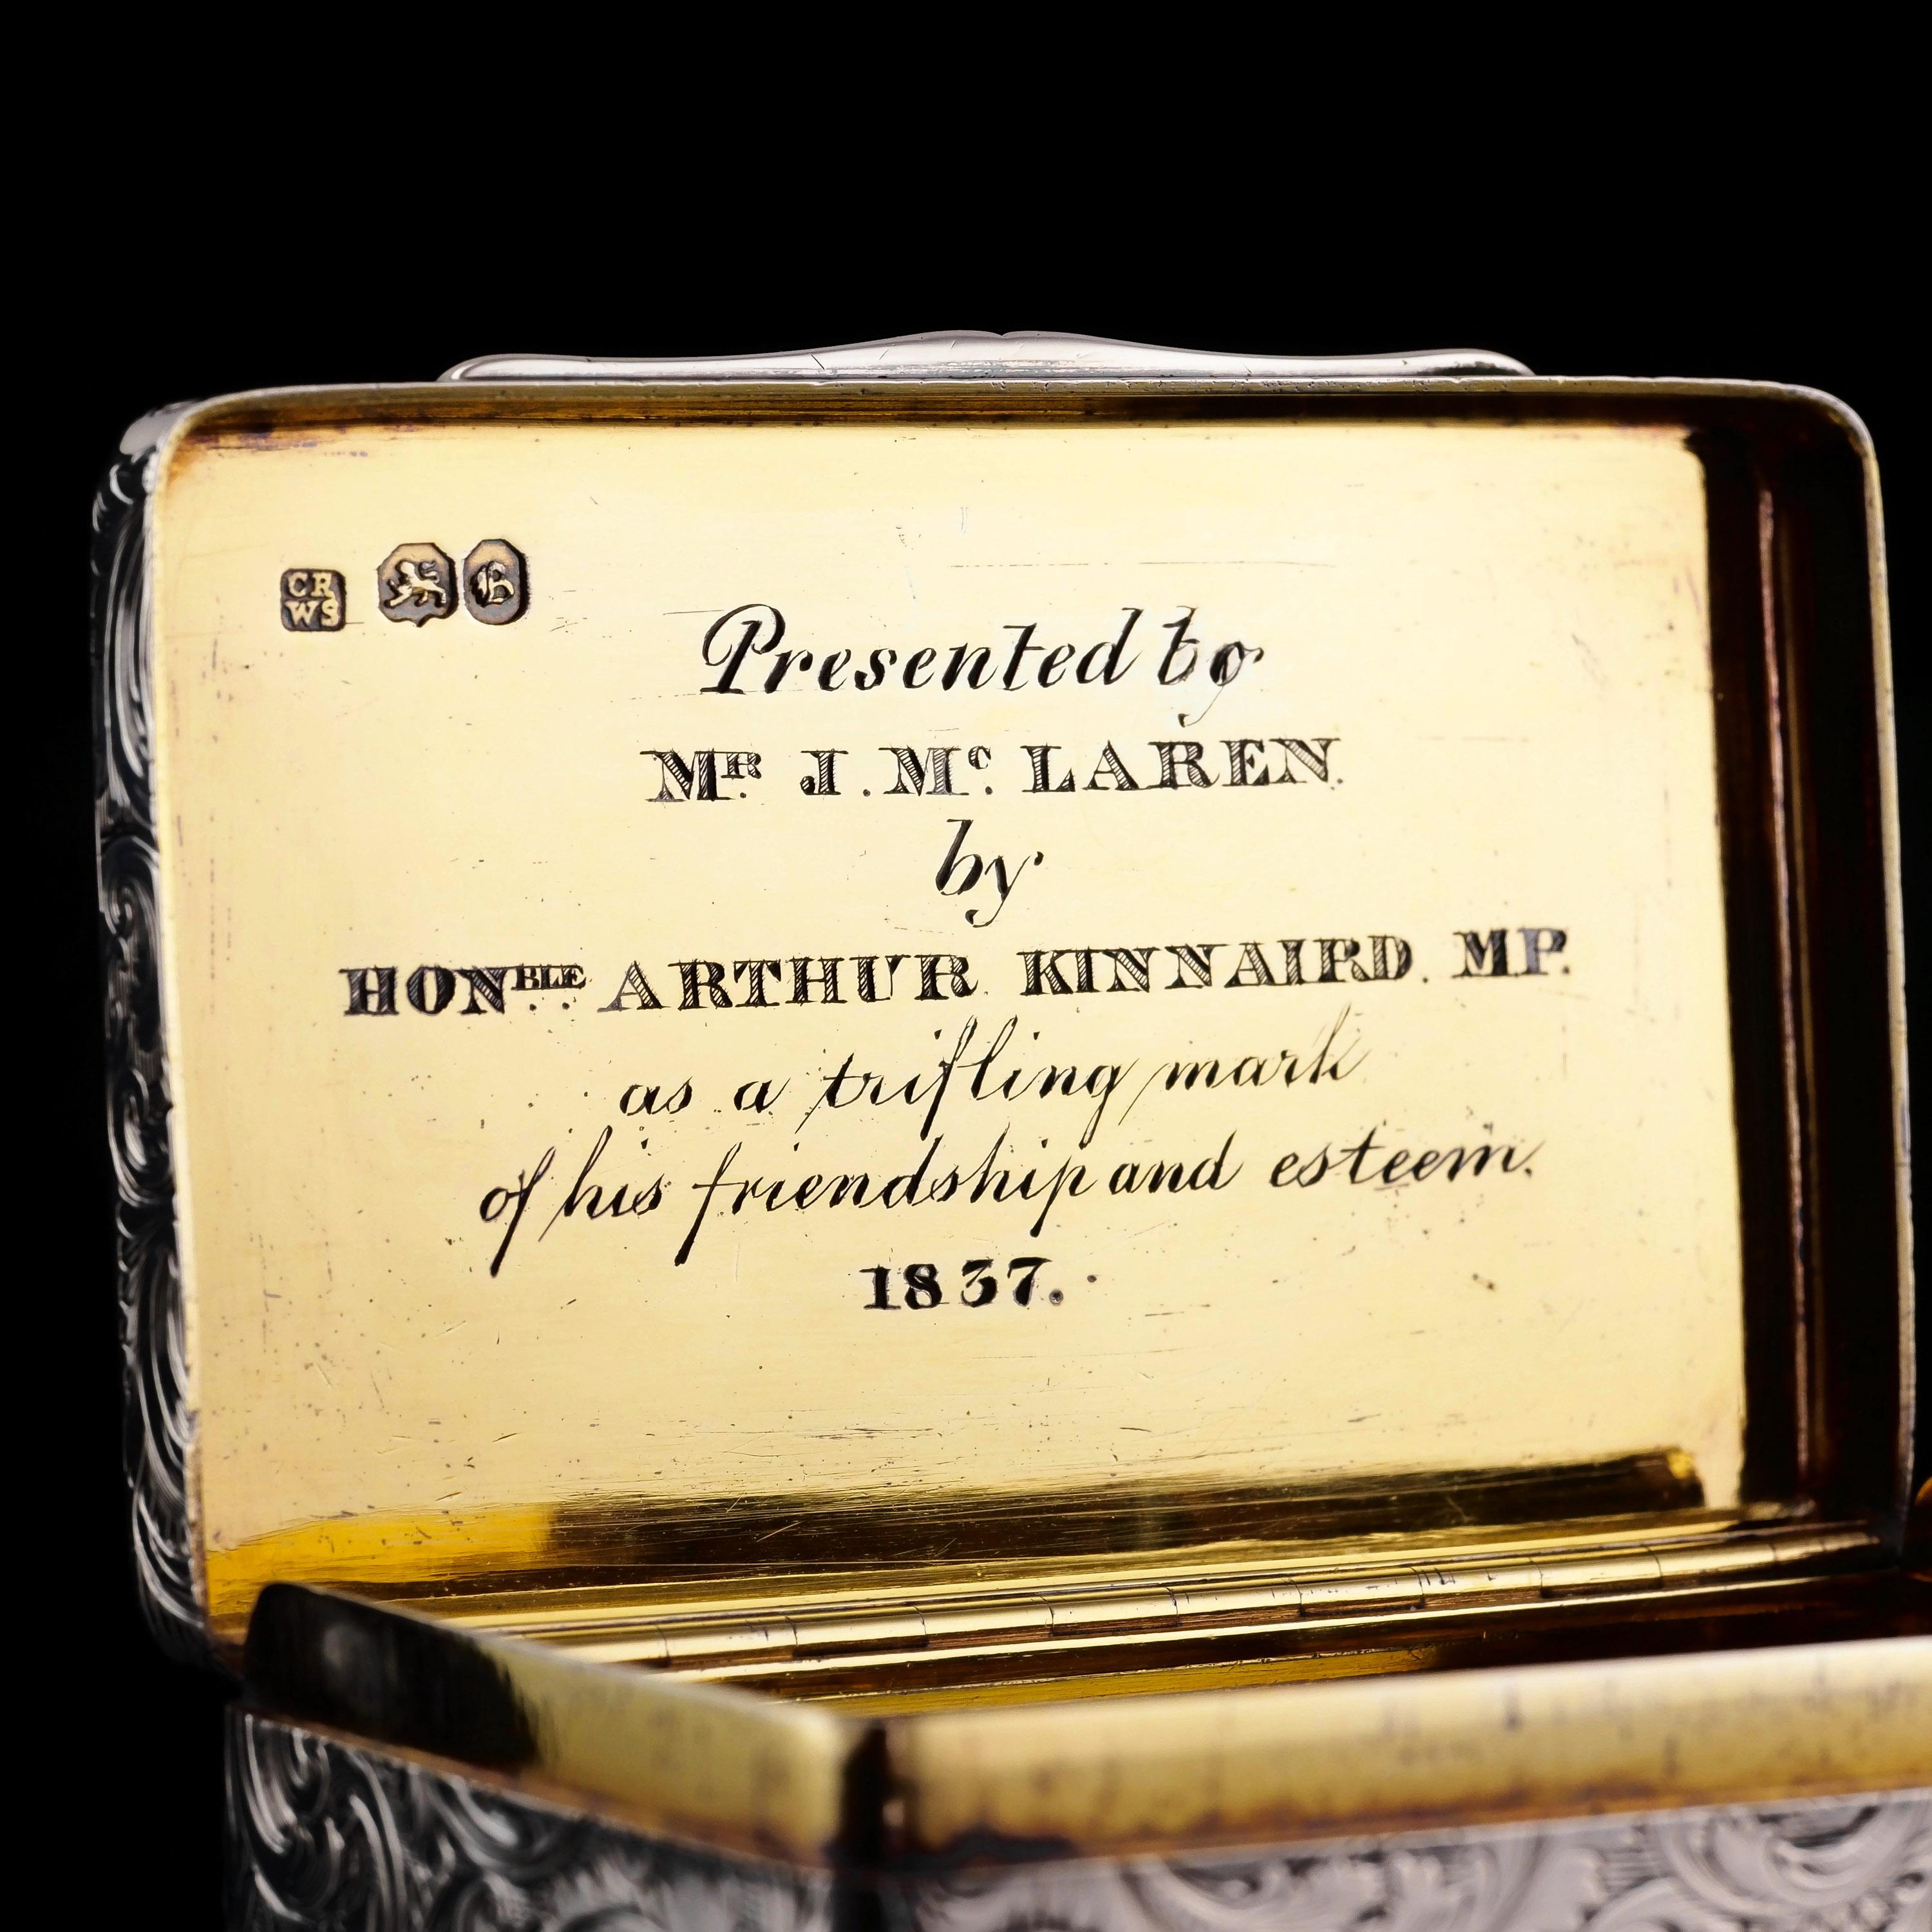 Antique Silver Snuff Box Hunting Scene Design - 1837 For Sale 1